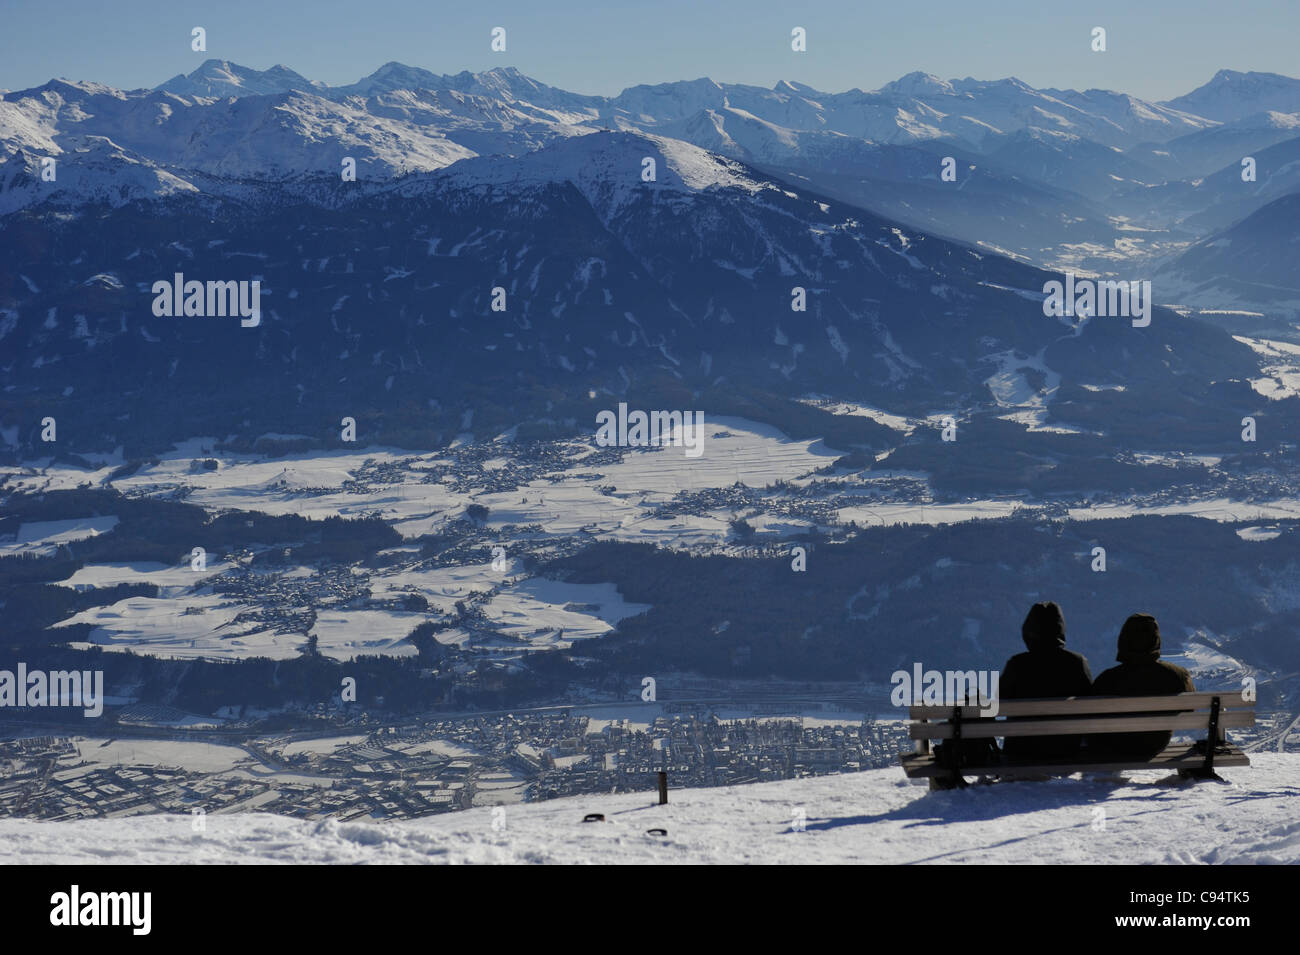 Les montagnes au-dessus d'Innsbruck, Autriche, offrent un excellent endroit pour faire du ski ou Snowbaord ou simplement de prendre le temps et d'admirer la vue Banque D'Images